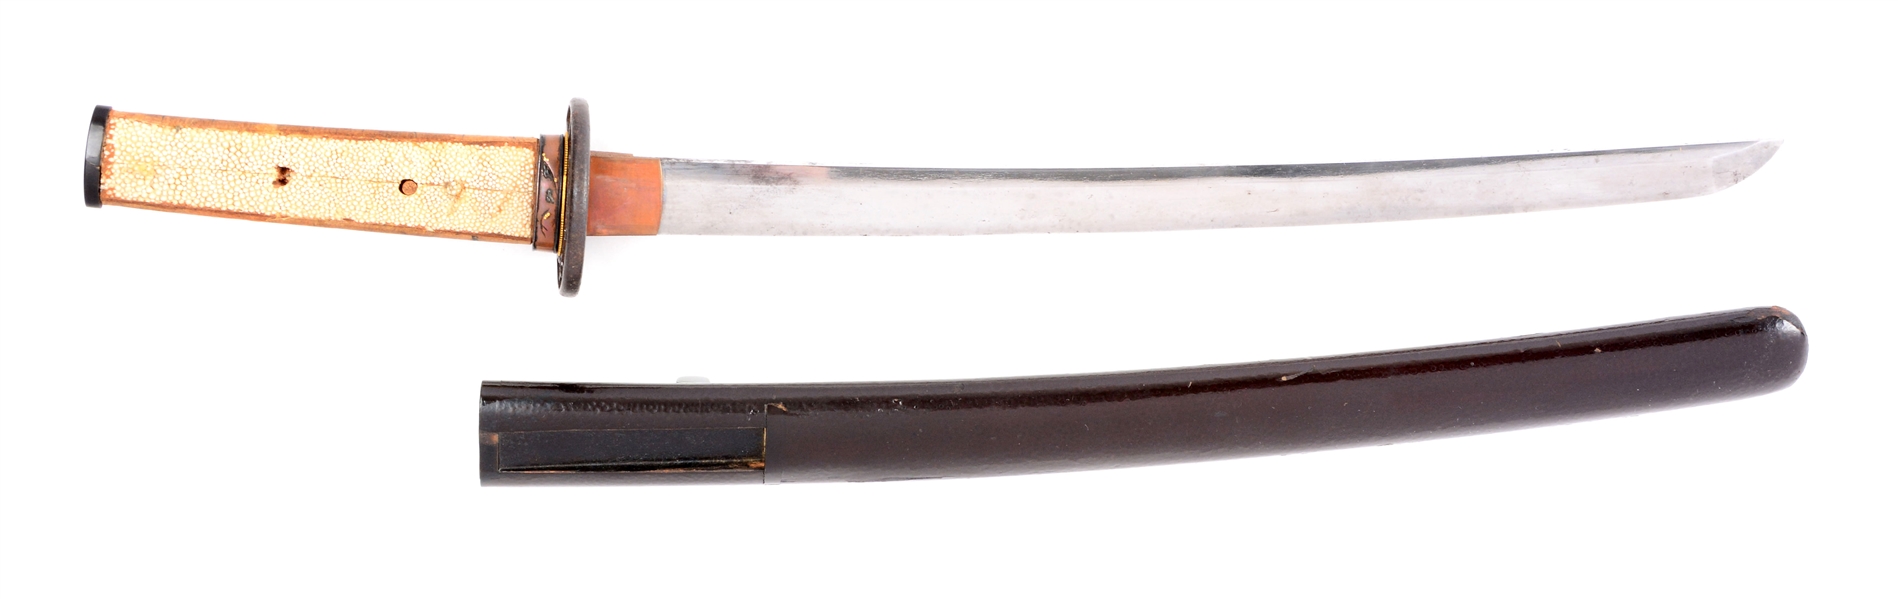 JAPANESE SAMURAI WAKIZASHI SWORD.